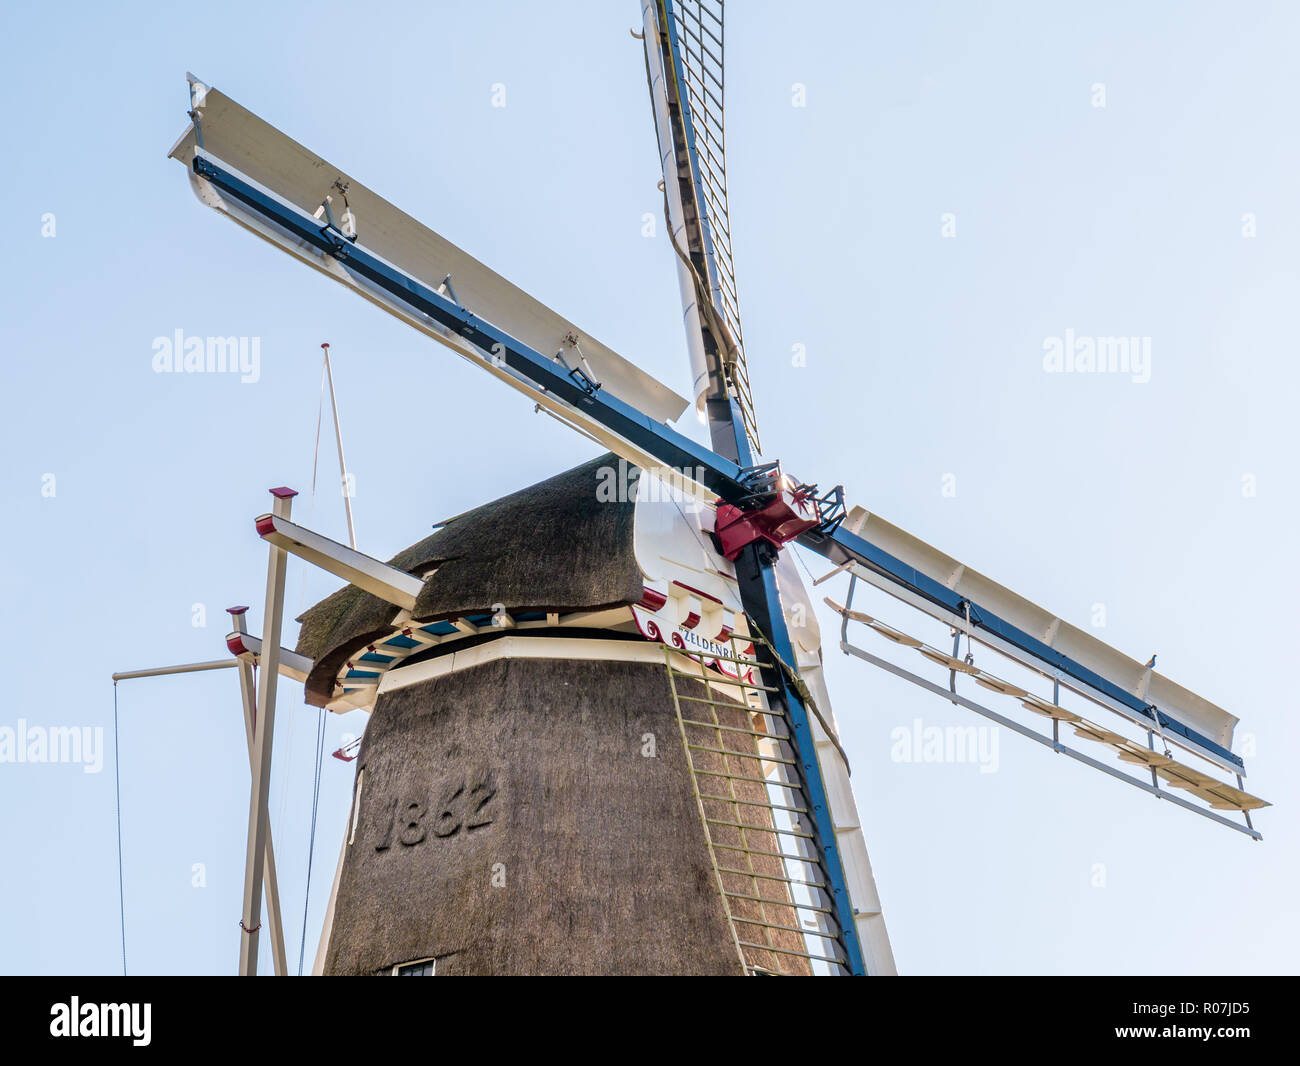 Dettaglio del mulino a vento Zeldenrust sulle fortificazioni della storica città fortificata di Dokkum, Friesland, Paesi Bassi Foto Stock